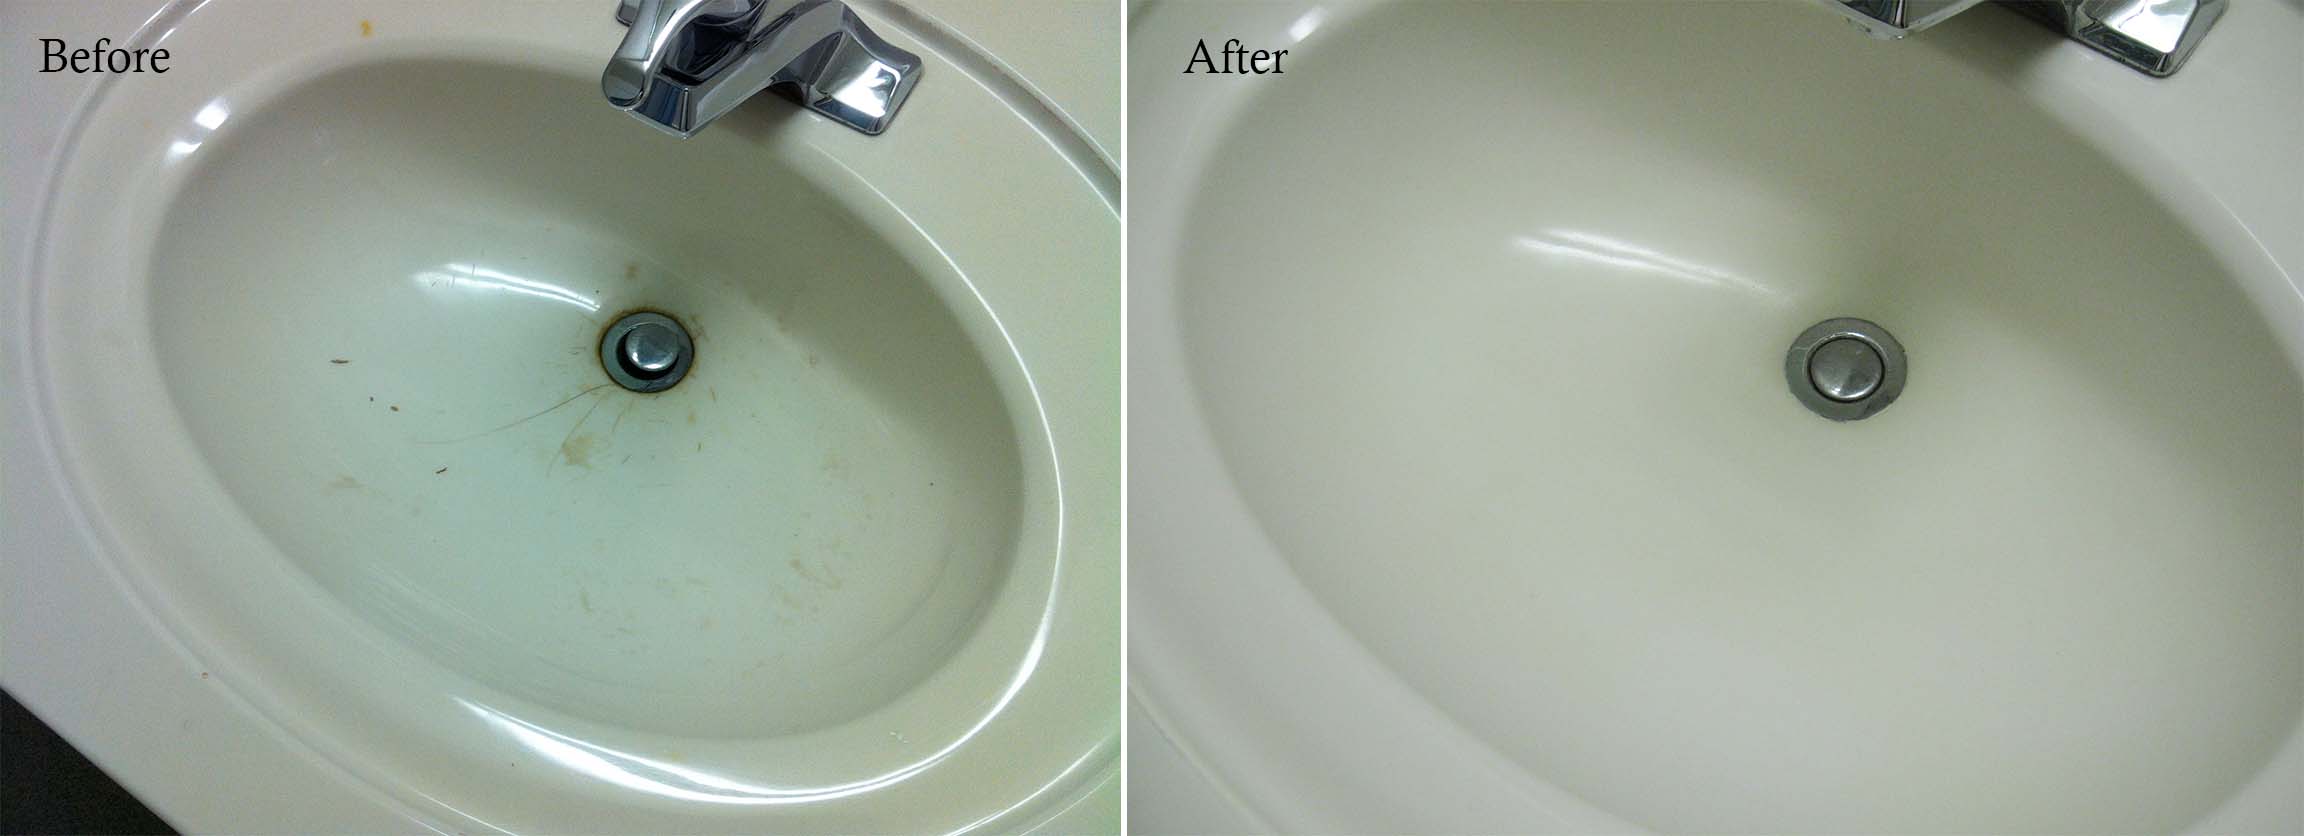 cultured marble bathroom sink repair